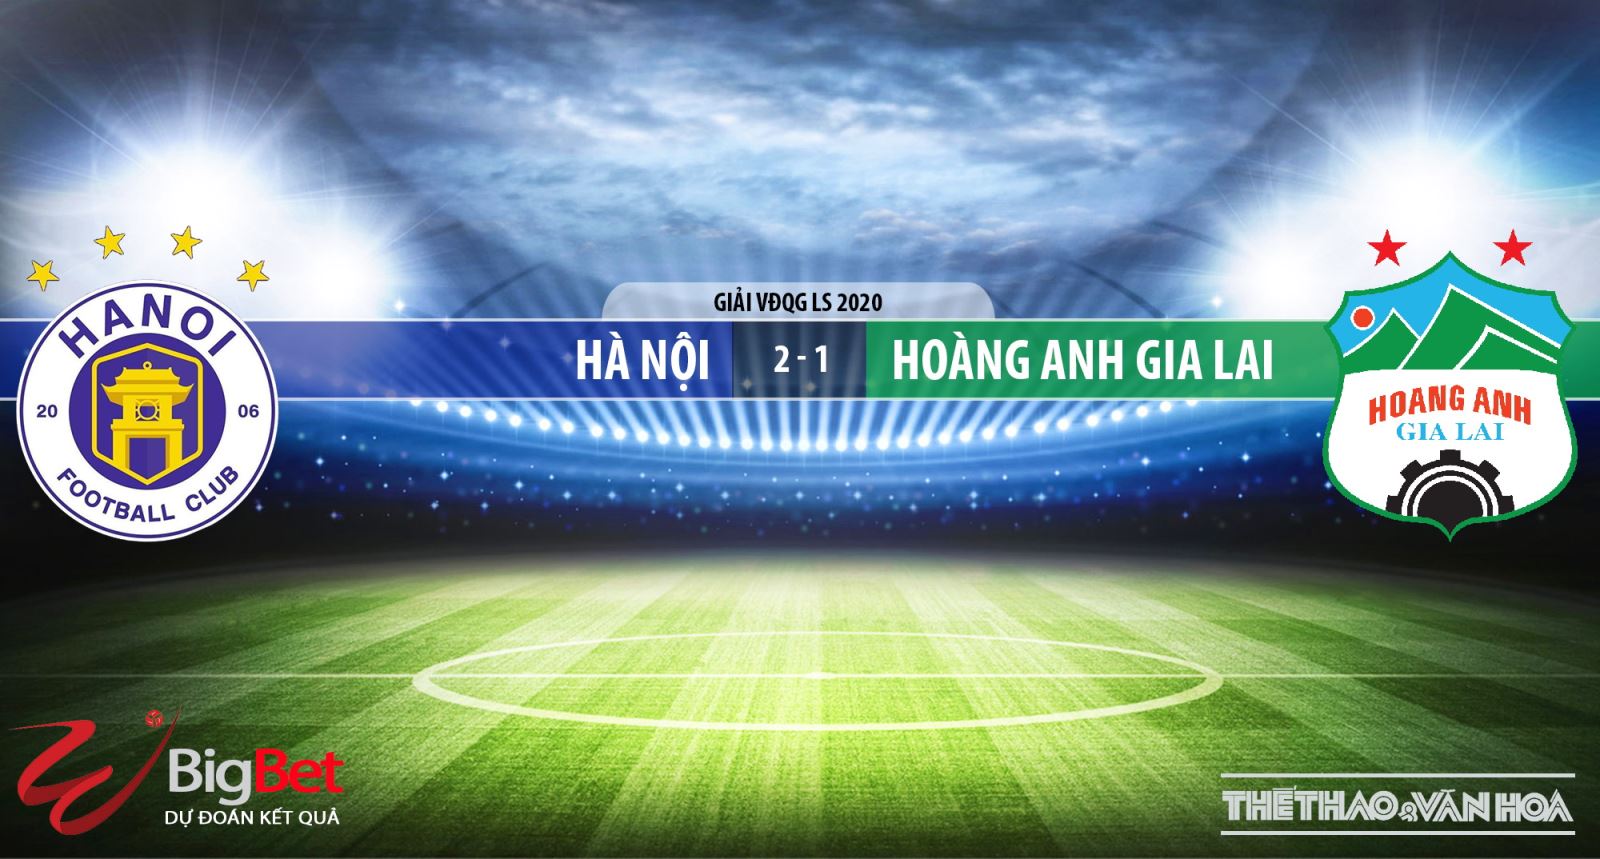 Hà Nội vs HAGL, HAGL, Hà Nội, trực tiếp bóng đá, dự đoán, nhận định Hà Nội vs HAGL, kèo bóng đá, soi kèo bóng đá, BĐTV